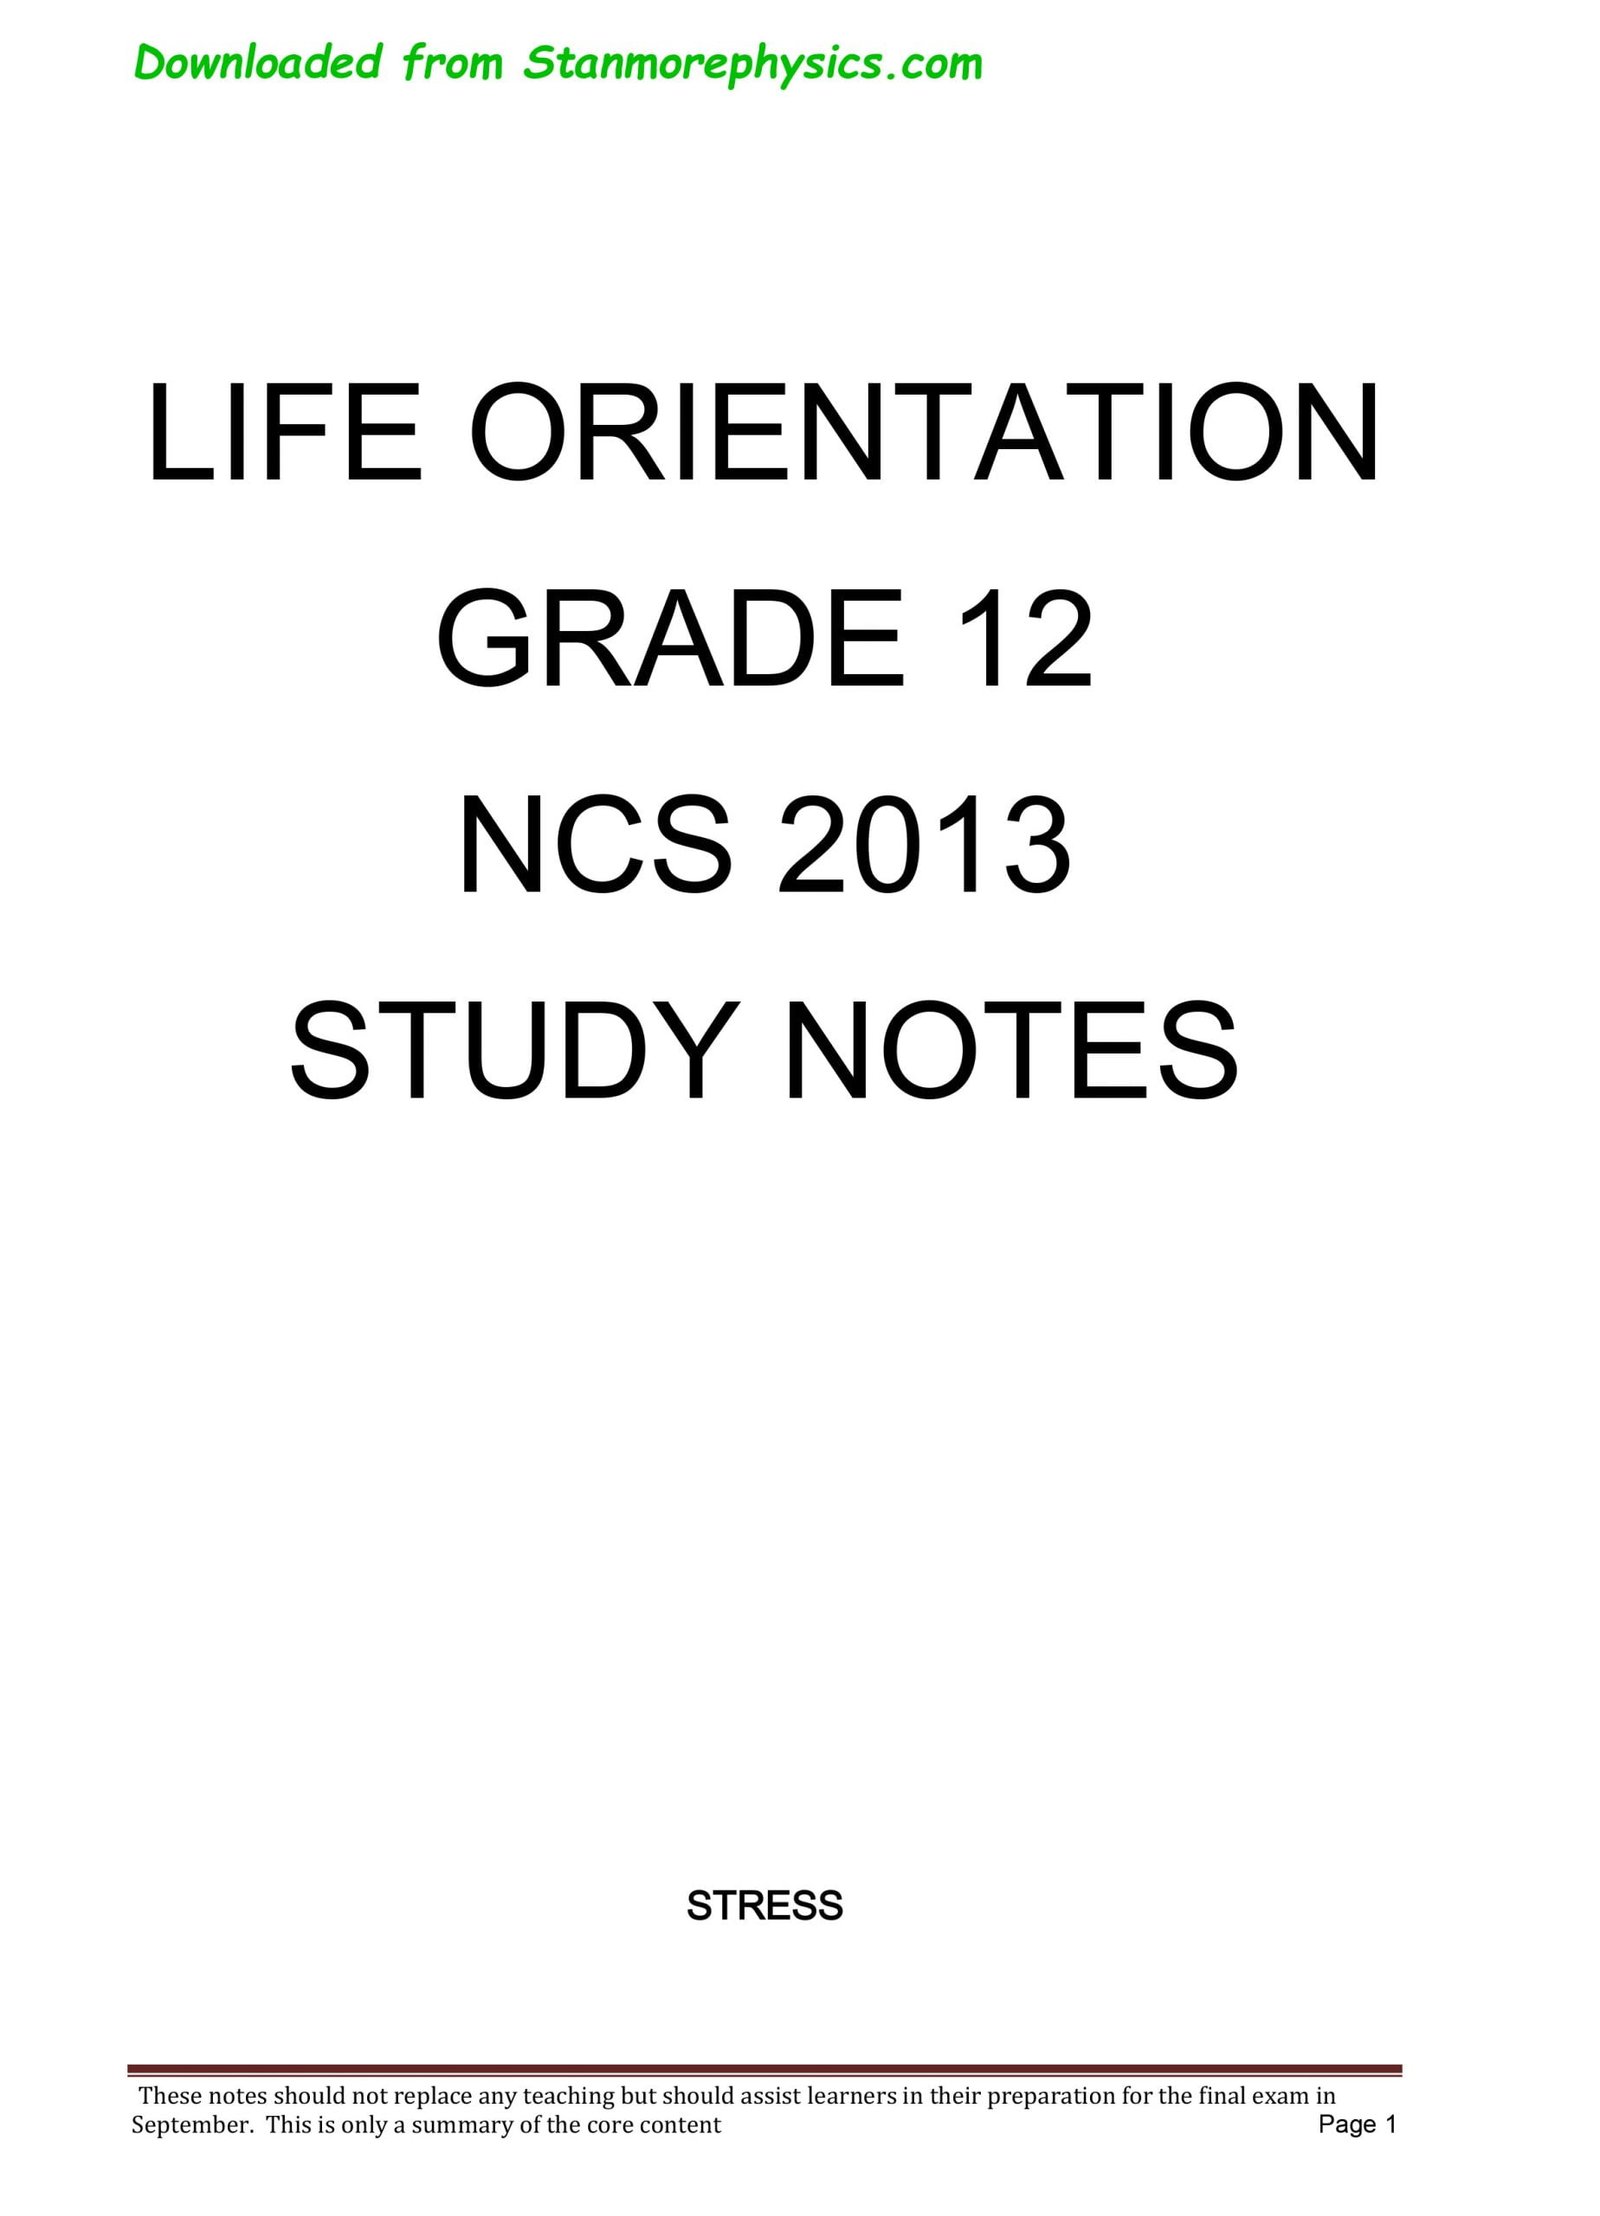 life orientation assignment grade 12